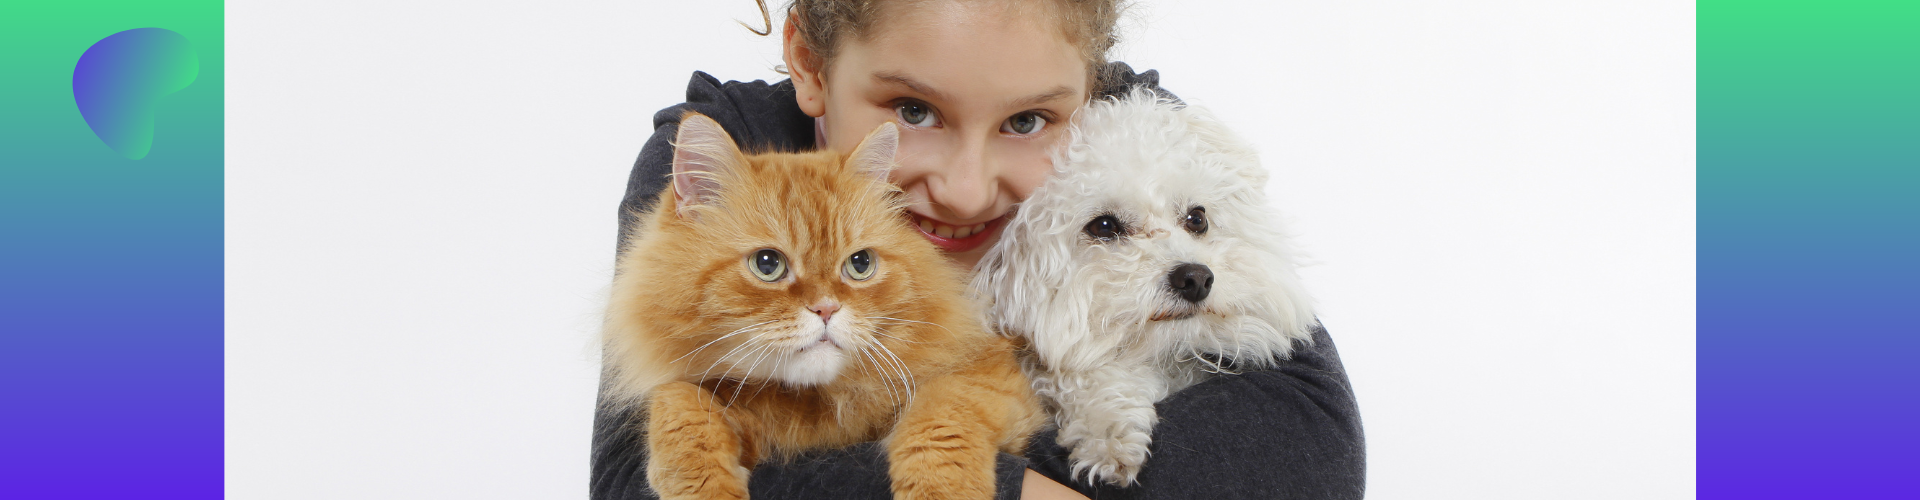 Voedingsadviseur voor hond en kat betekent liefdevolle aandacht en zorg voor onze dieren, meer hierover in dit info-webinar